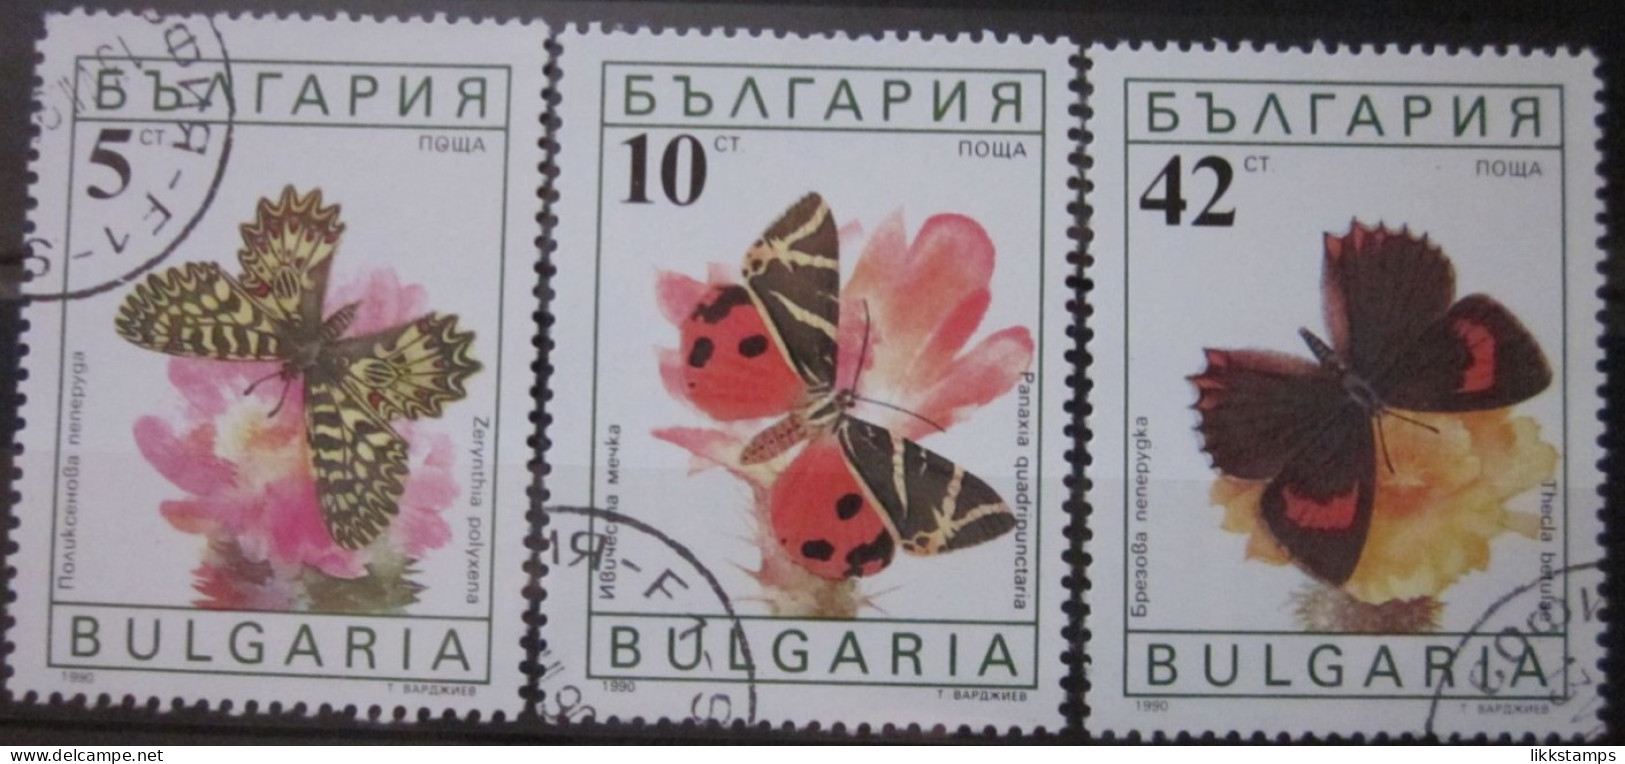 BULGARIA 1990 ~ S.G. 3699, 3700 & 3703, ~ BUTTERFLIES AND MOTHS. ~  VFU #02959 - Oblitérés